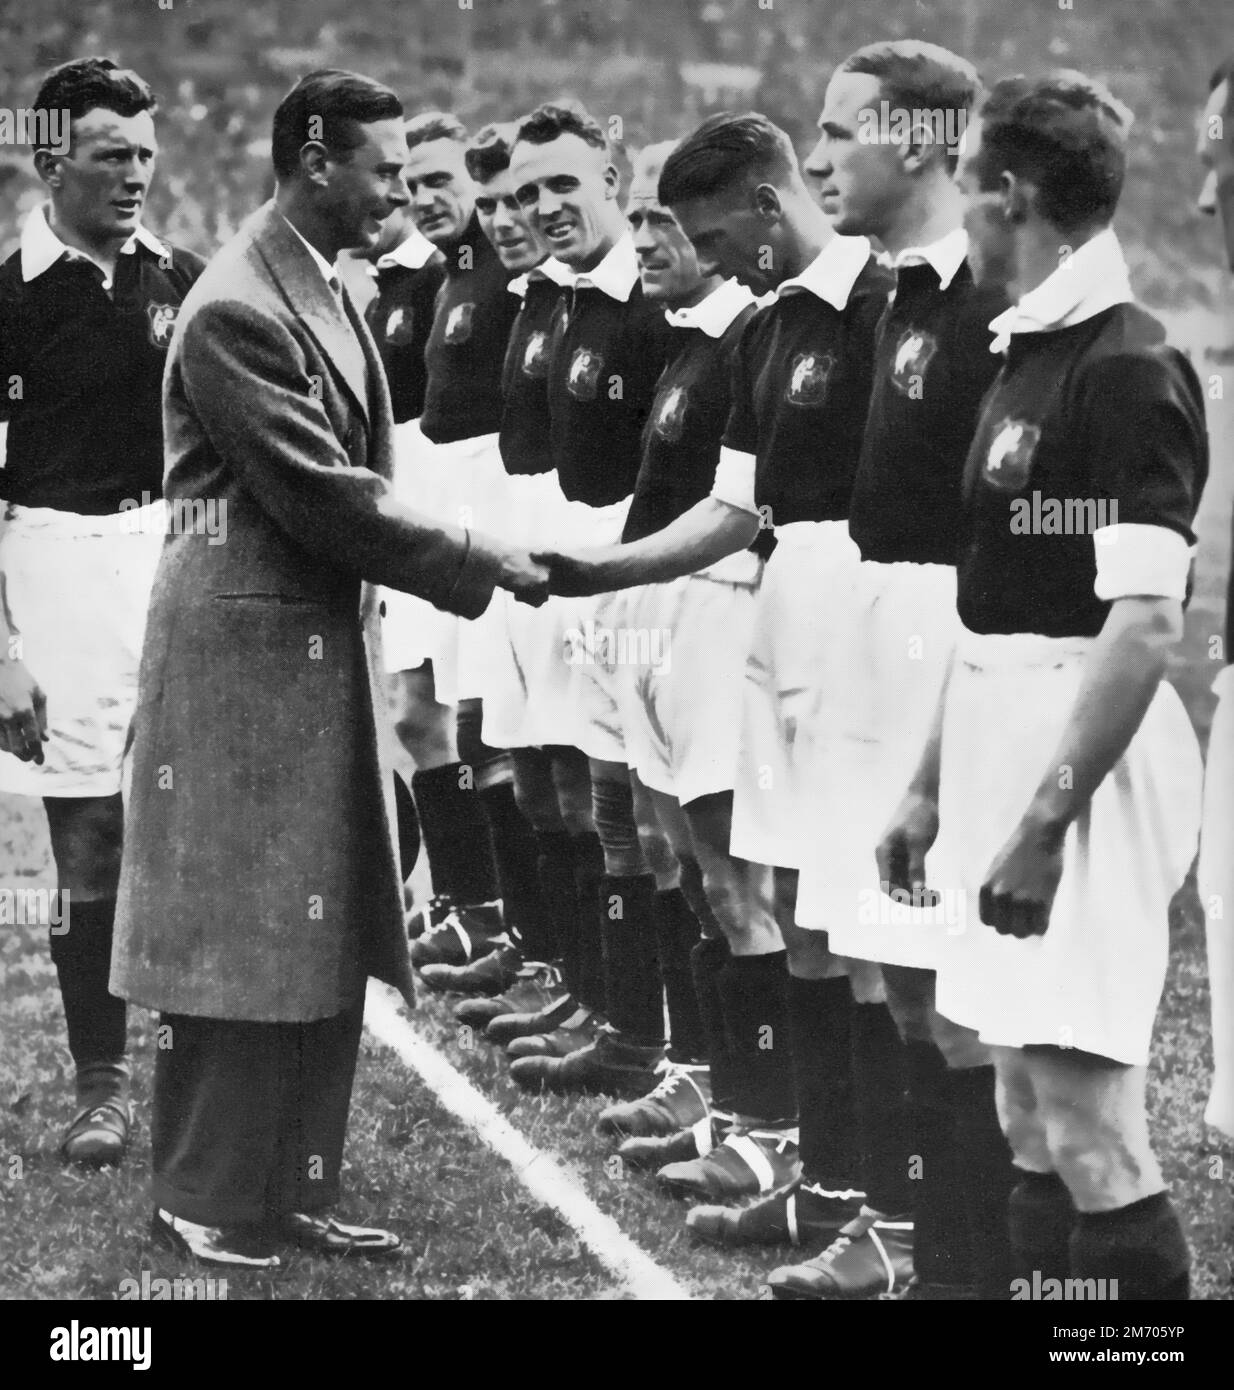 Le duc de York (1895-1952) rencontre l'équipe de Manchester City avant la finale de la coupe FA 1933. Le futur roi George VI a rencontré les équipes et a remporté le trophée. Everton a gagné 3-0, gagnant la coupe pour la première fois depuis 1906. Banque D'Images